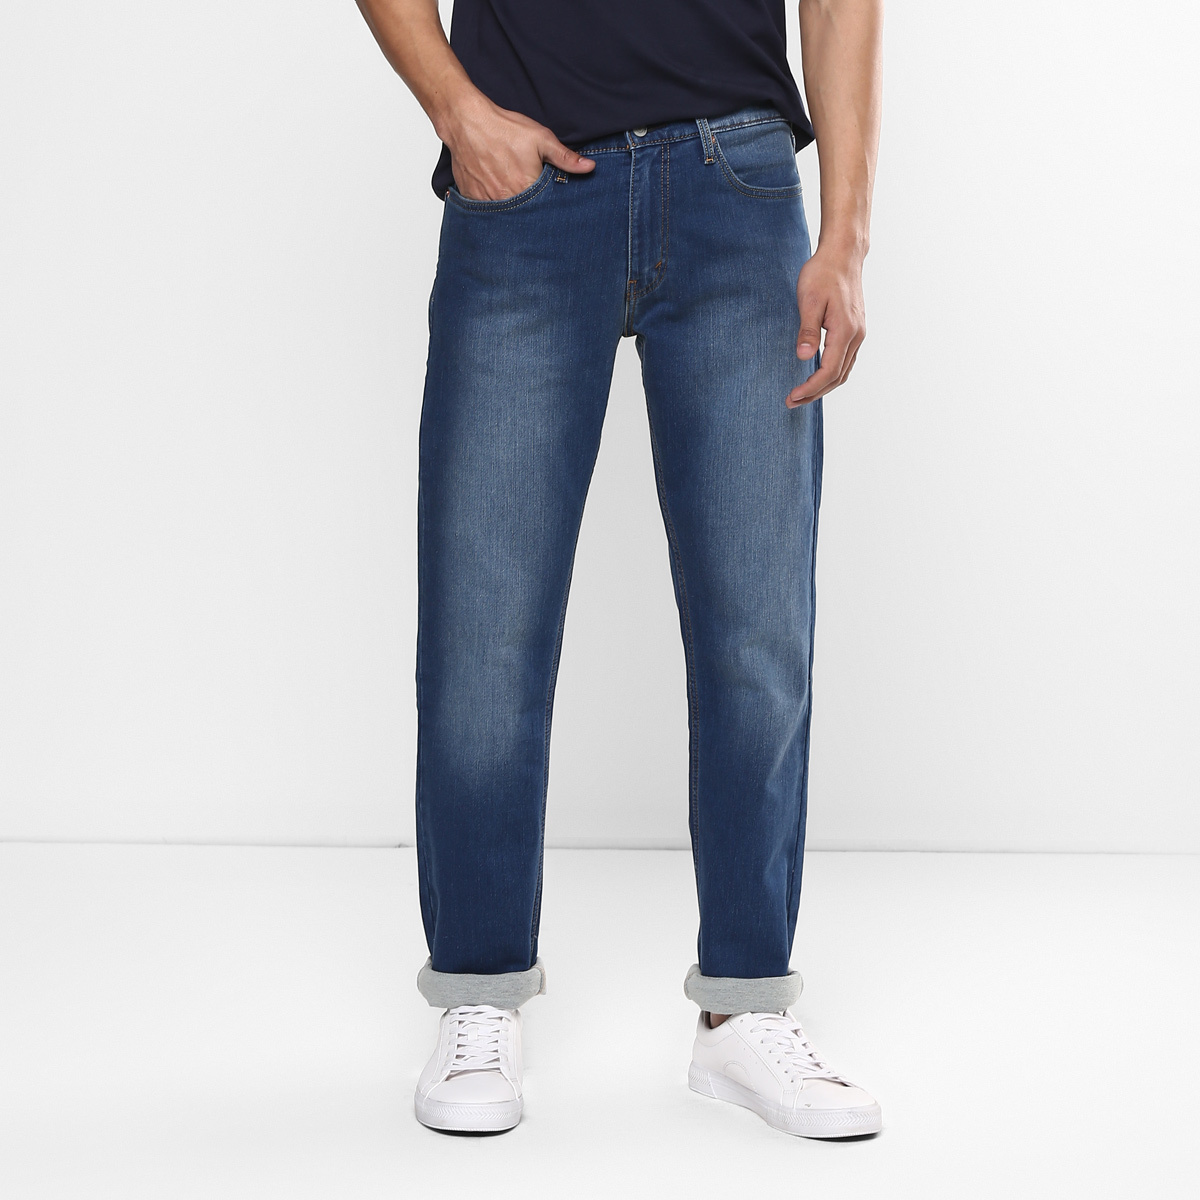 LEVIS MEN Single Length Jeans 23677-0180 Blue 32